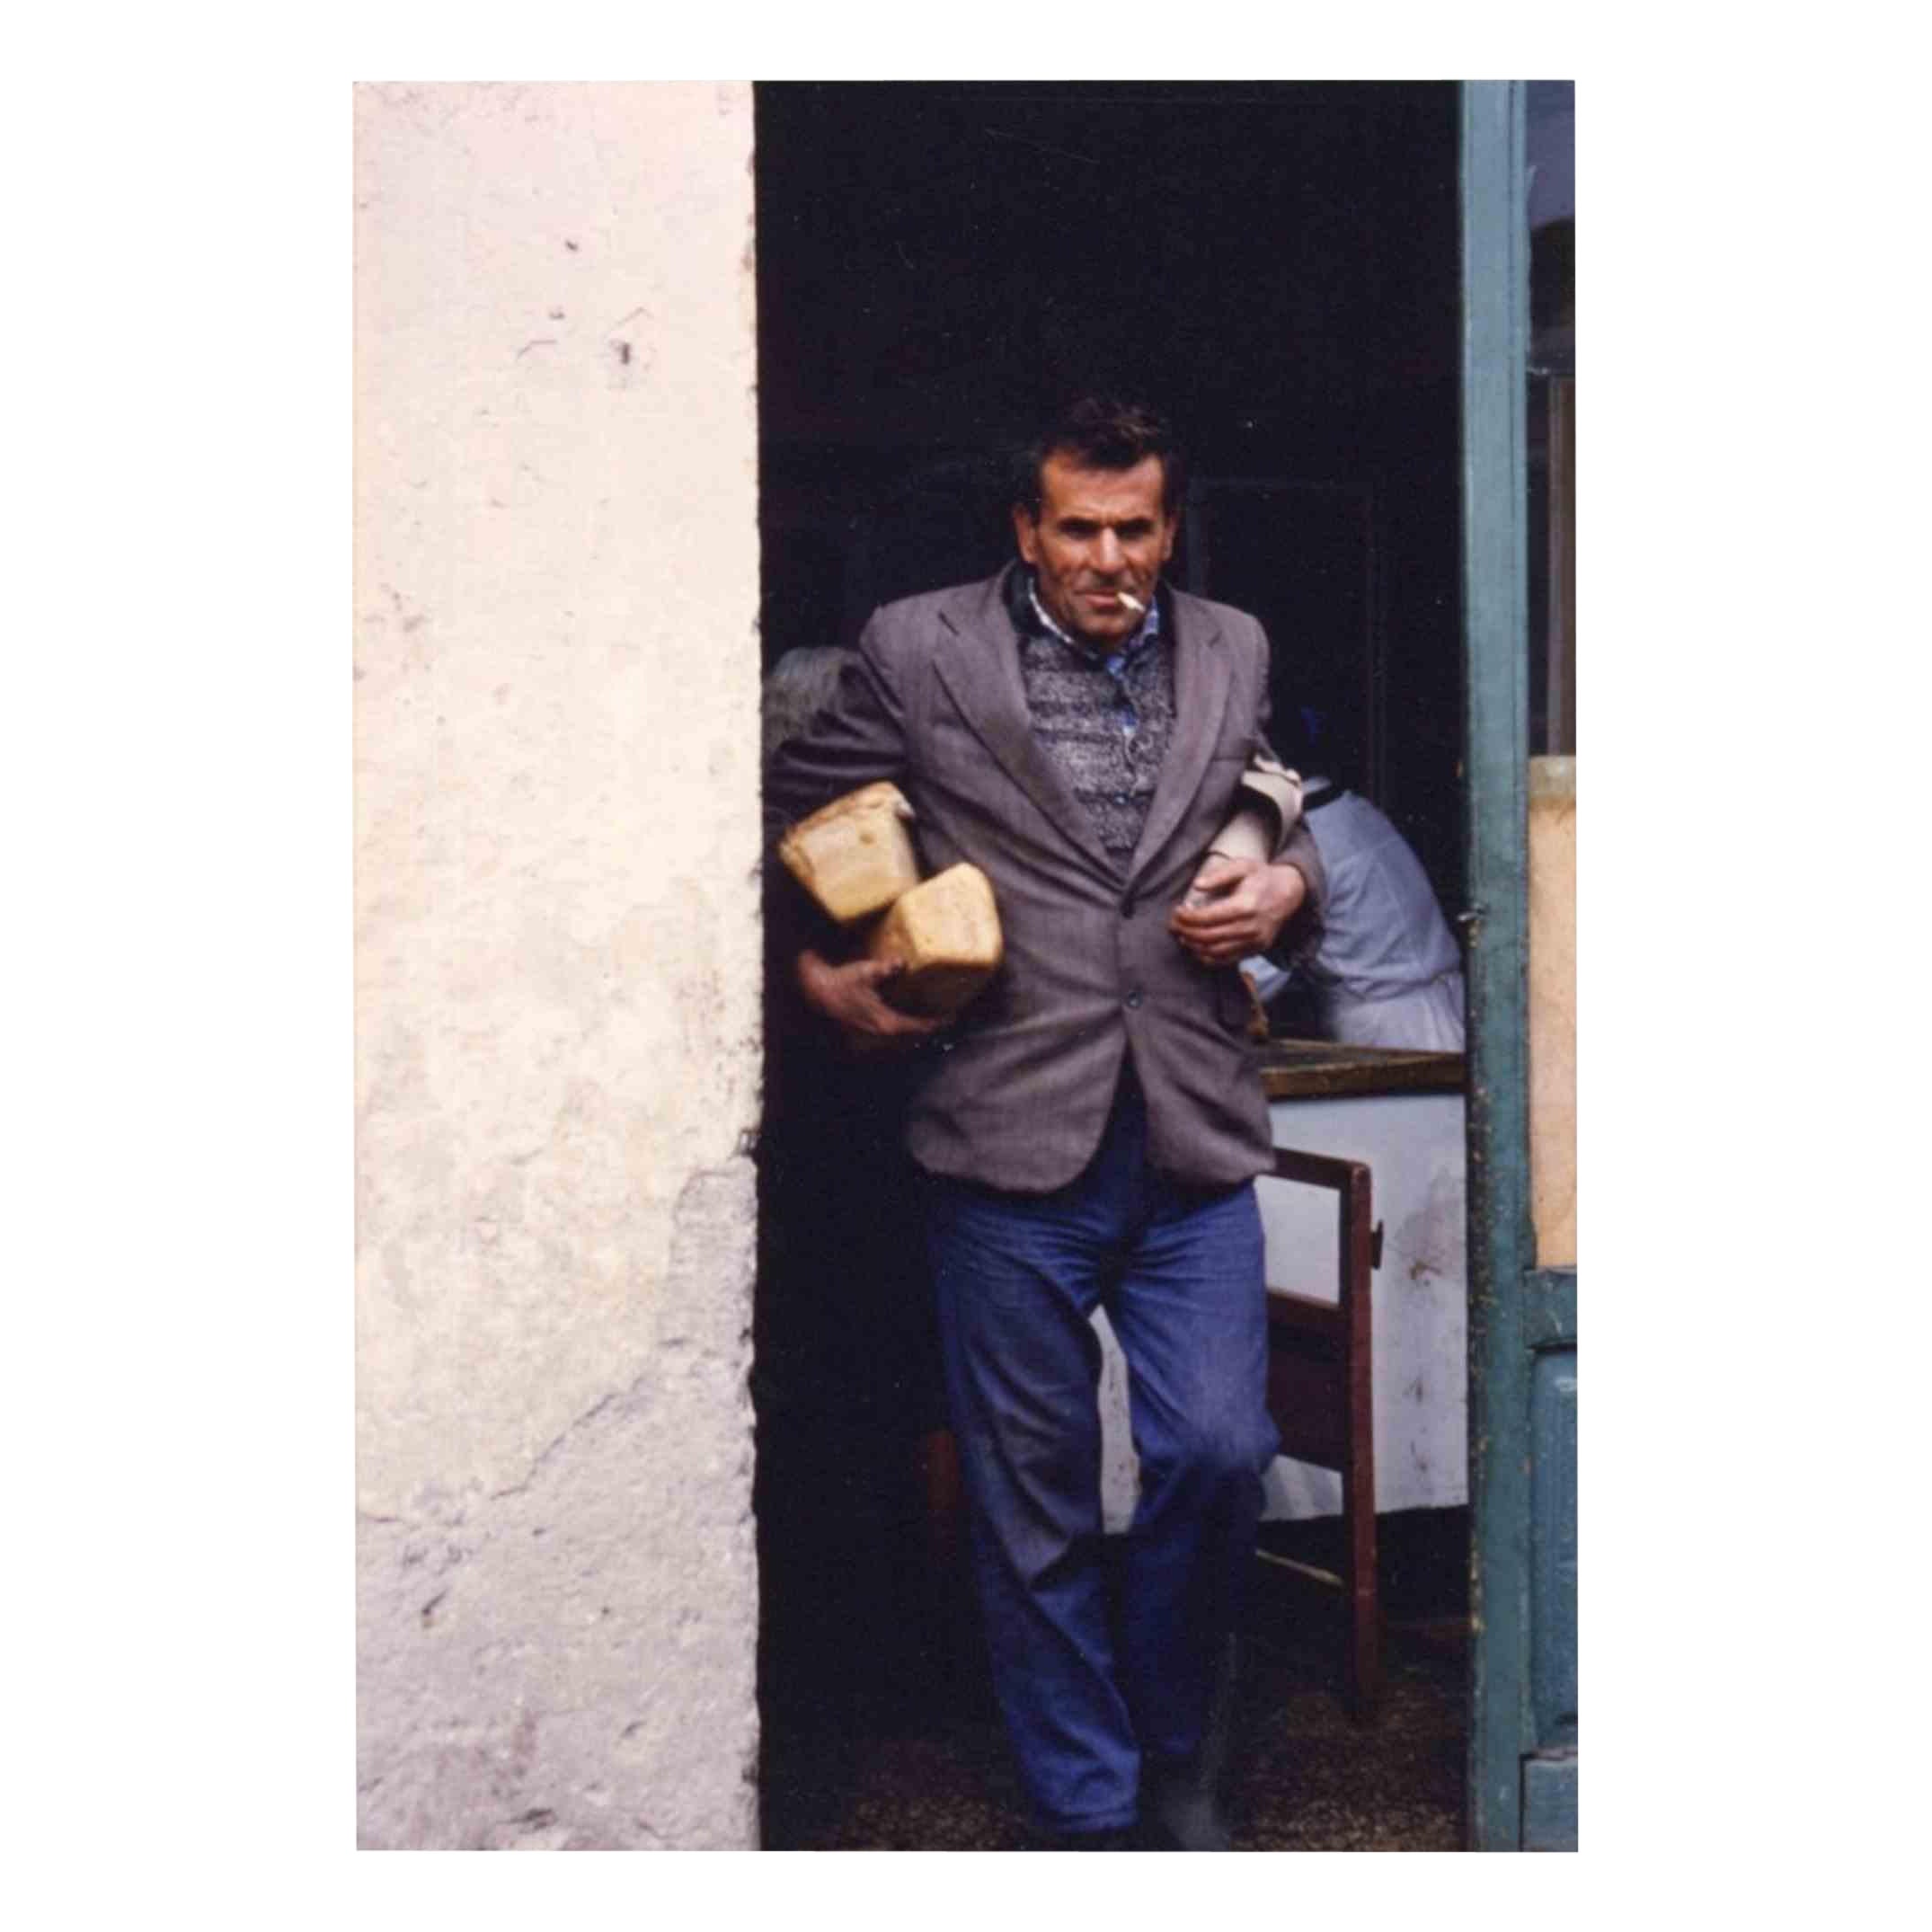 Reportage aus Tirana – Brot – Vintage-Fotografie – Ende der 1970er Jahre